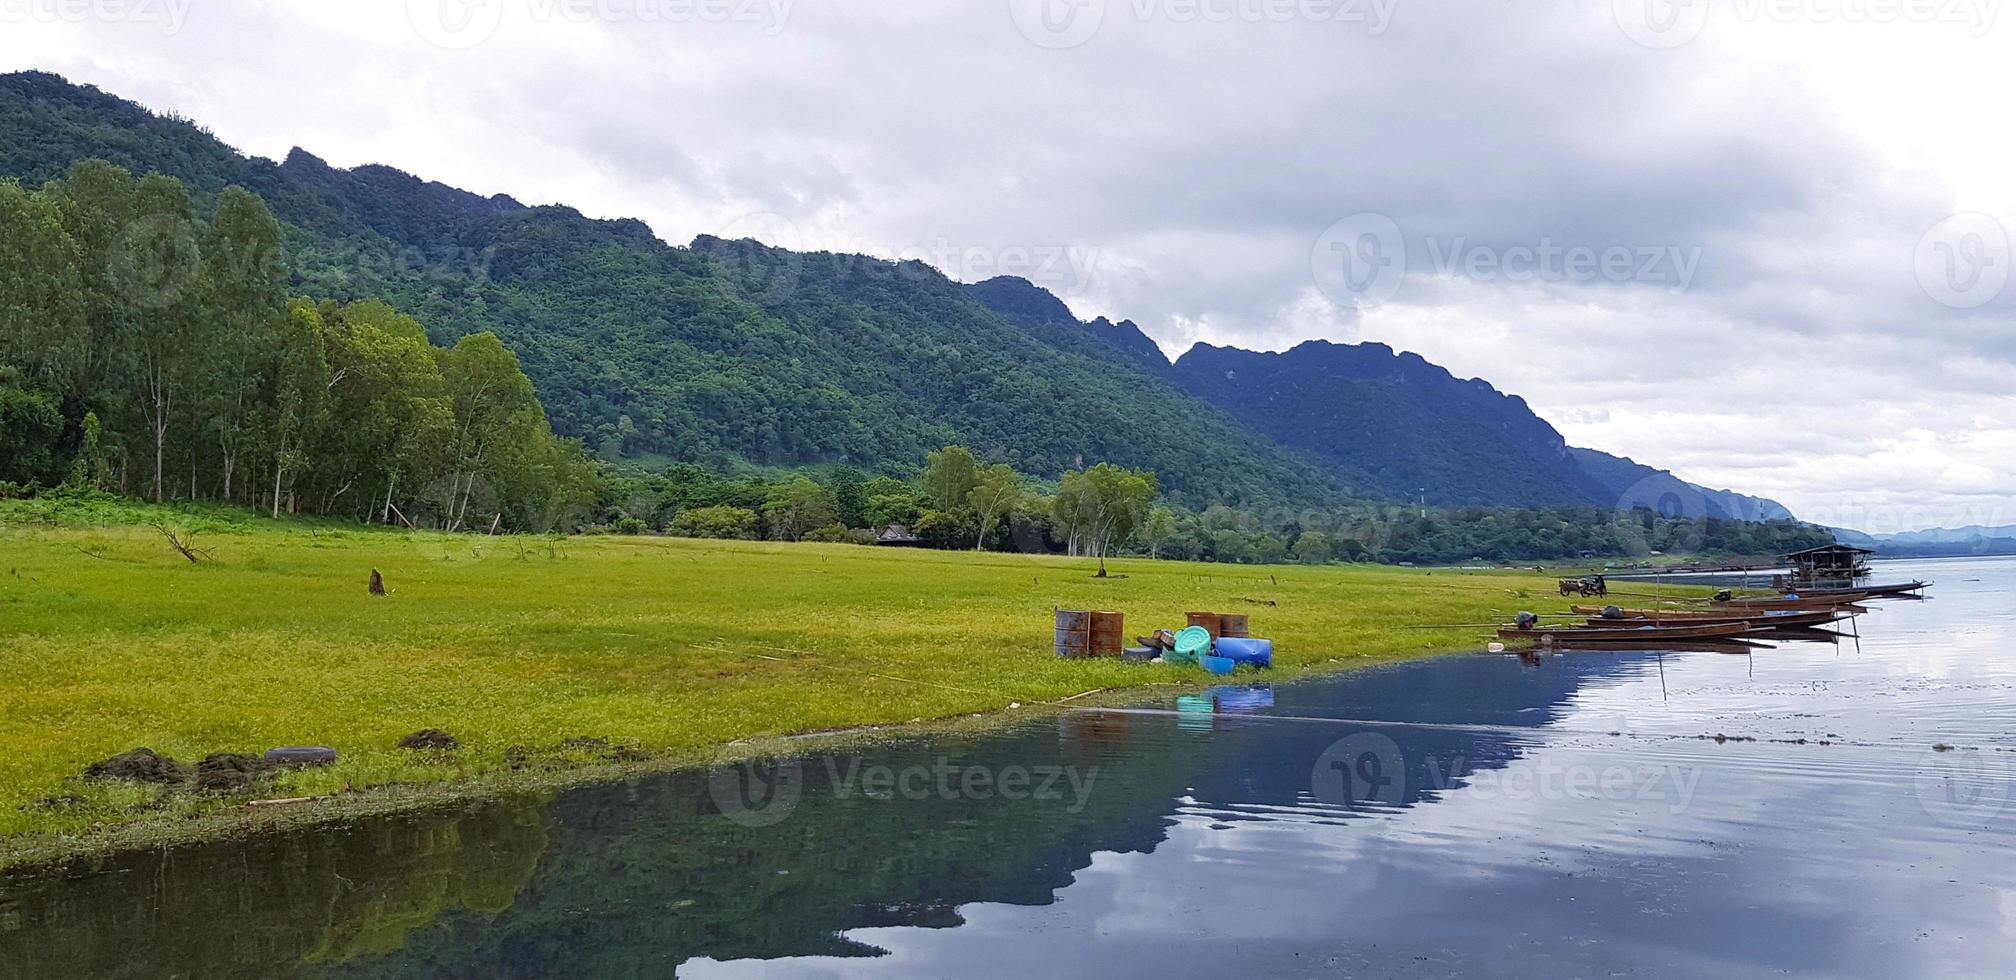 mooi van landschap visie. lang staart boot geparkeerd of drijvend Aan de water met groen gras, boom, groot berg en wolk lucht achtergrond Bij srinakarin meer, kanchanaburi, Thailand. natuur behang foto